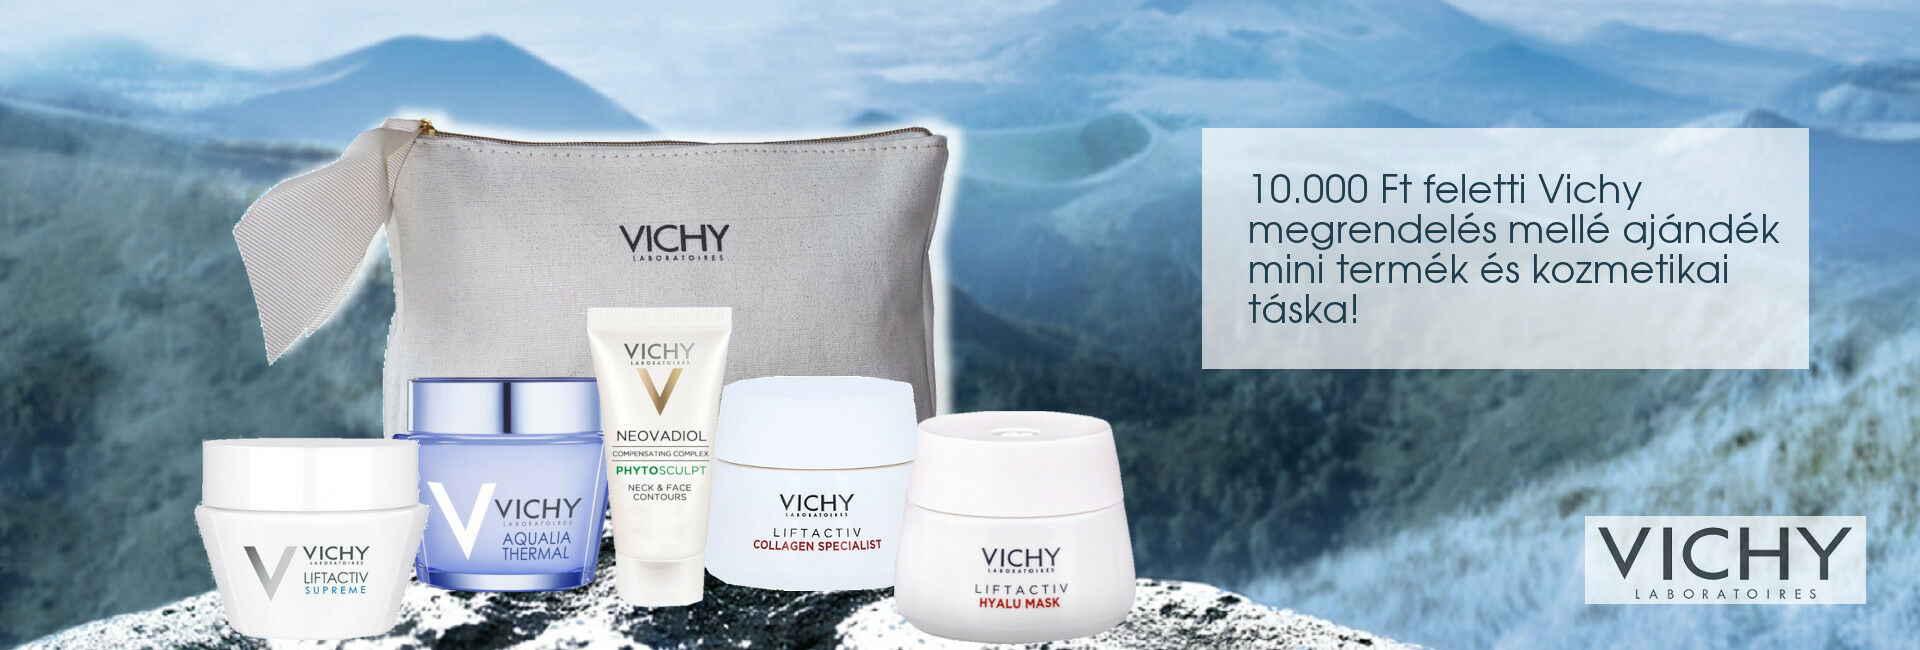 2020. december 3-10. között minden 10.000 Ft feletti Vichy megrendelés mellé választható mini Vichy arcápoló terméket és exkluzív Vichy kozmetikai táskát adunk ajándékba!